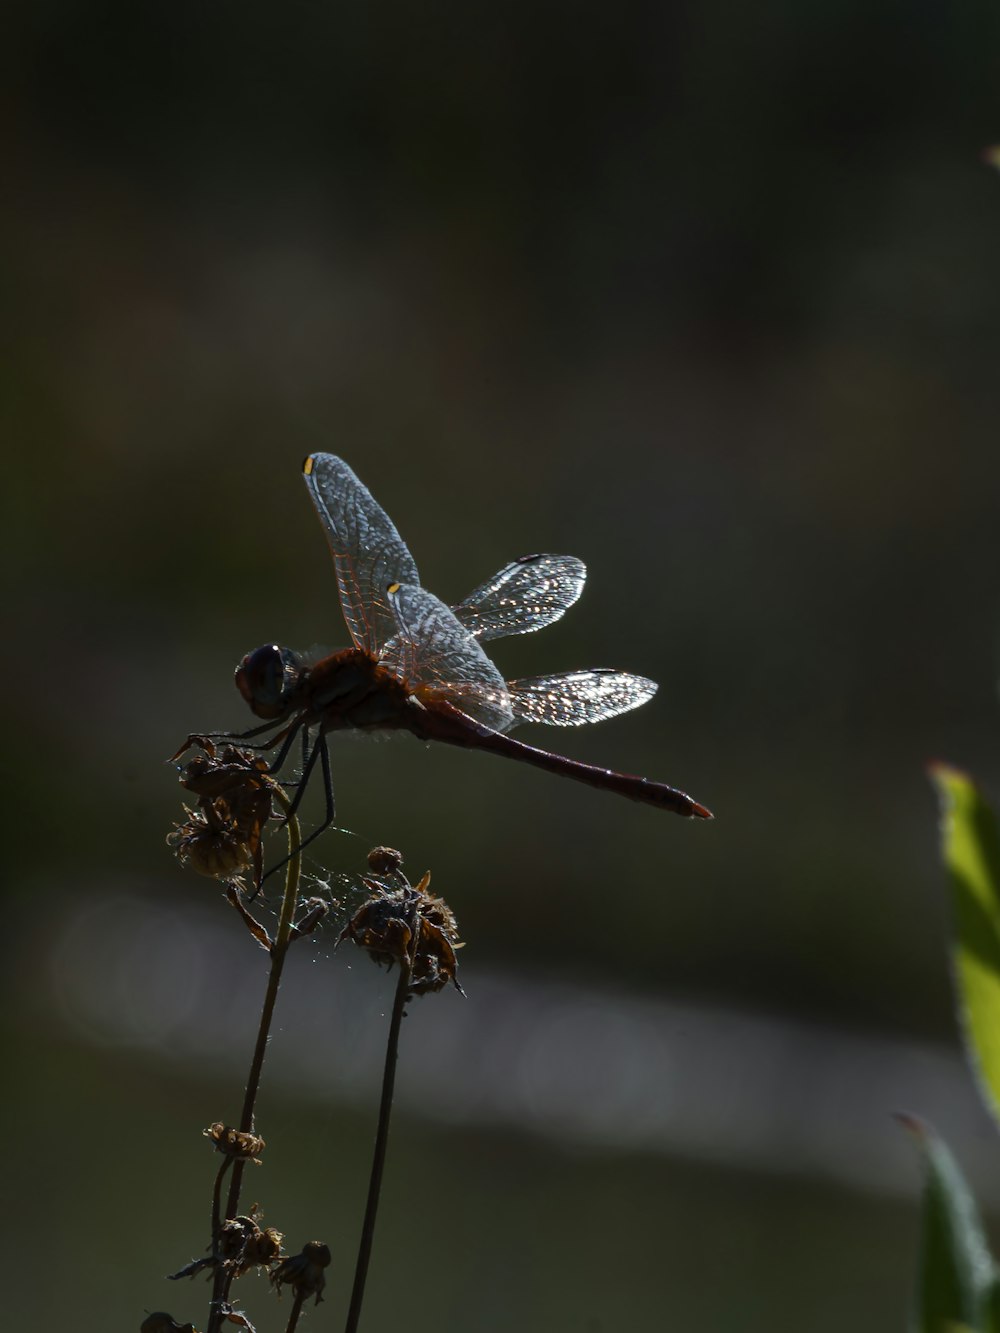 libellula marrone e bianca appollaiata sullo stelo marrone nella fotografia ravvicinata durante il giorno